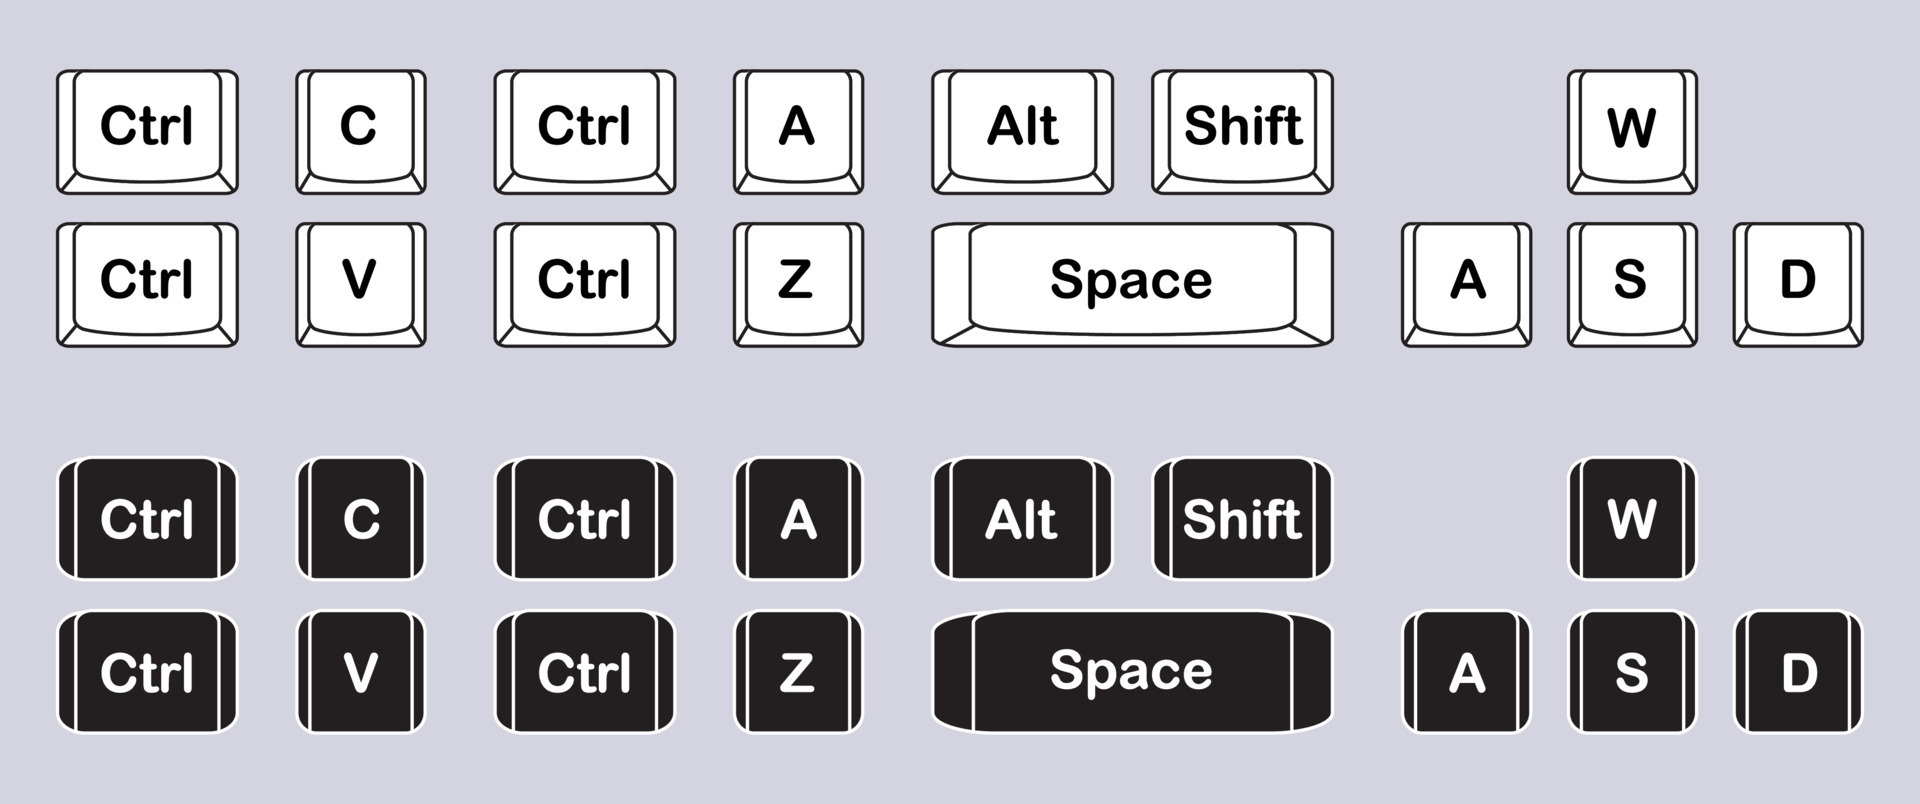 keyboard button assignment